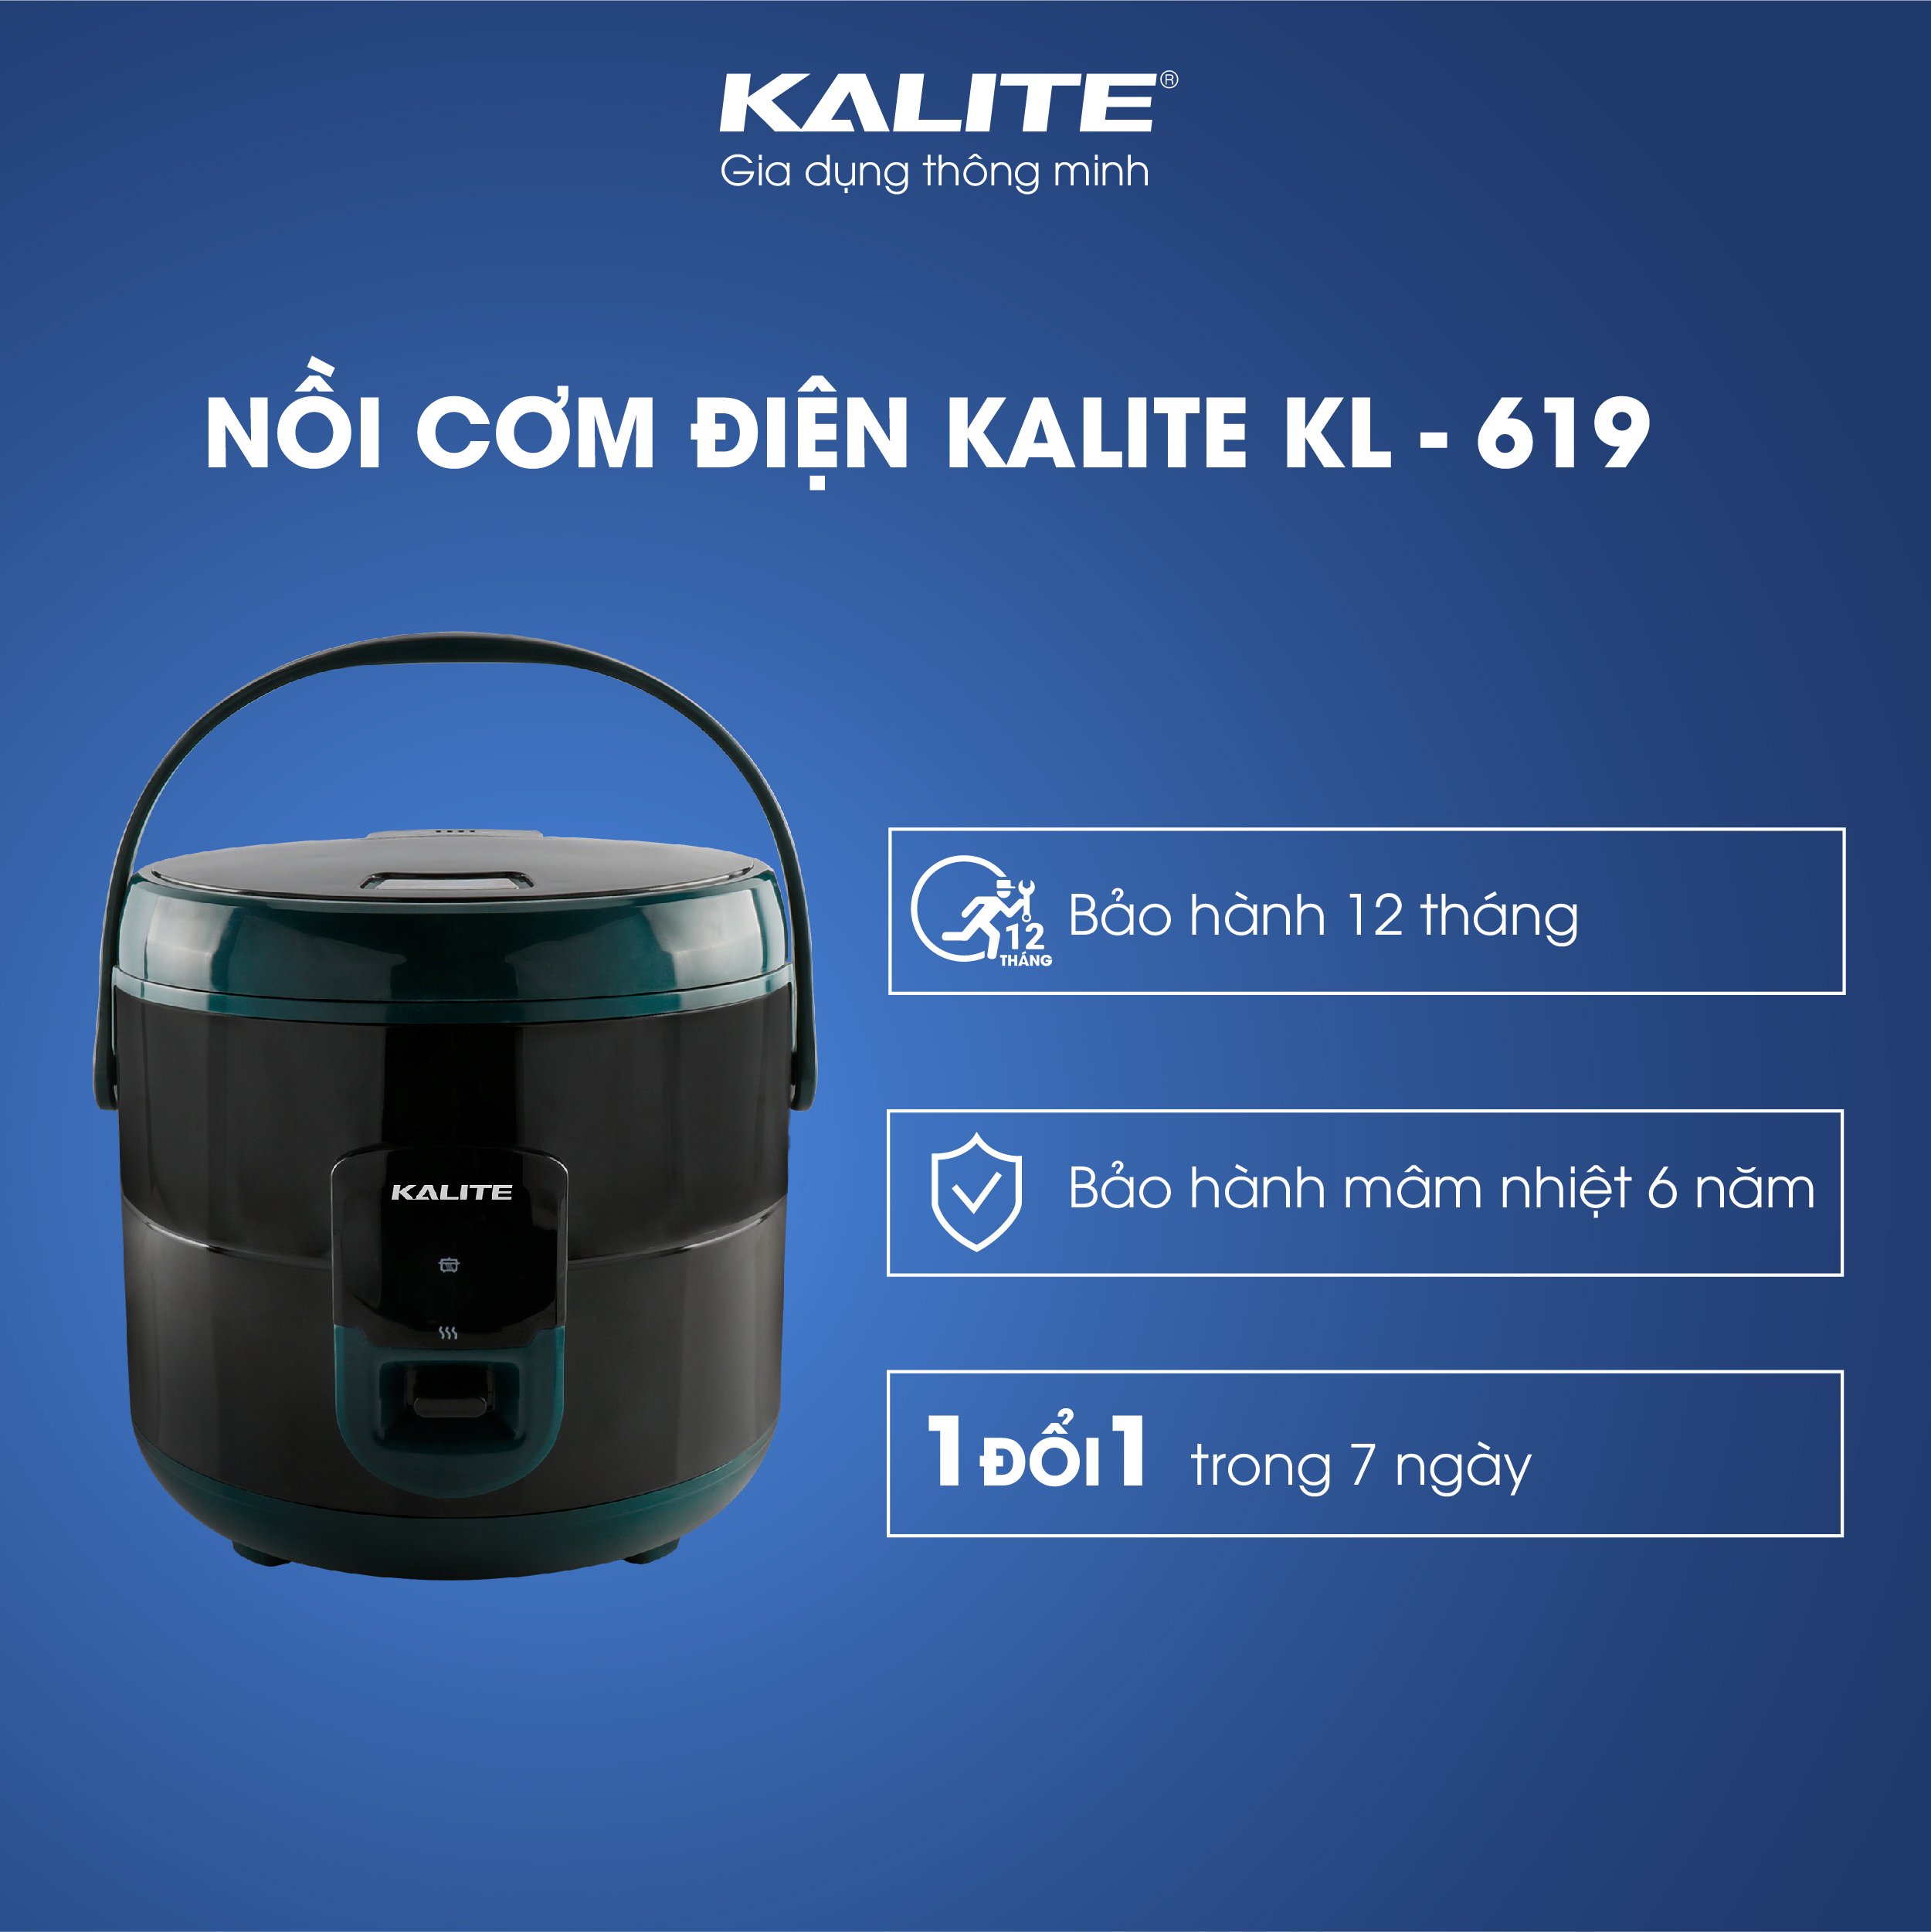 noi-com-dien-kalite-kl-619-2